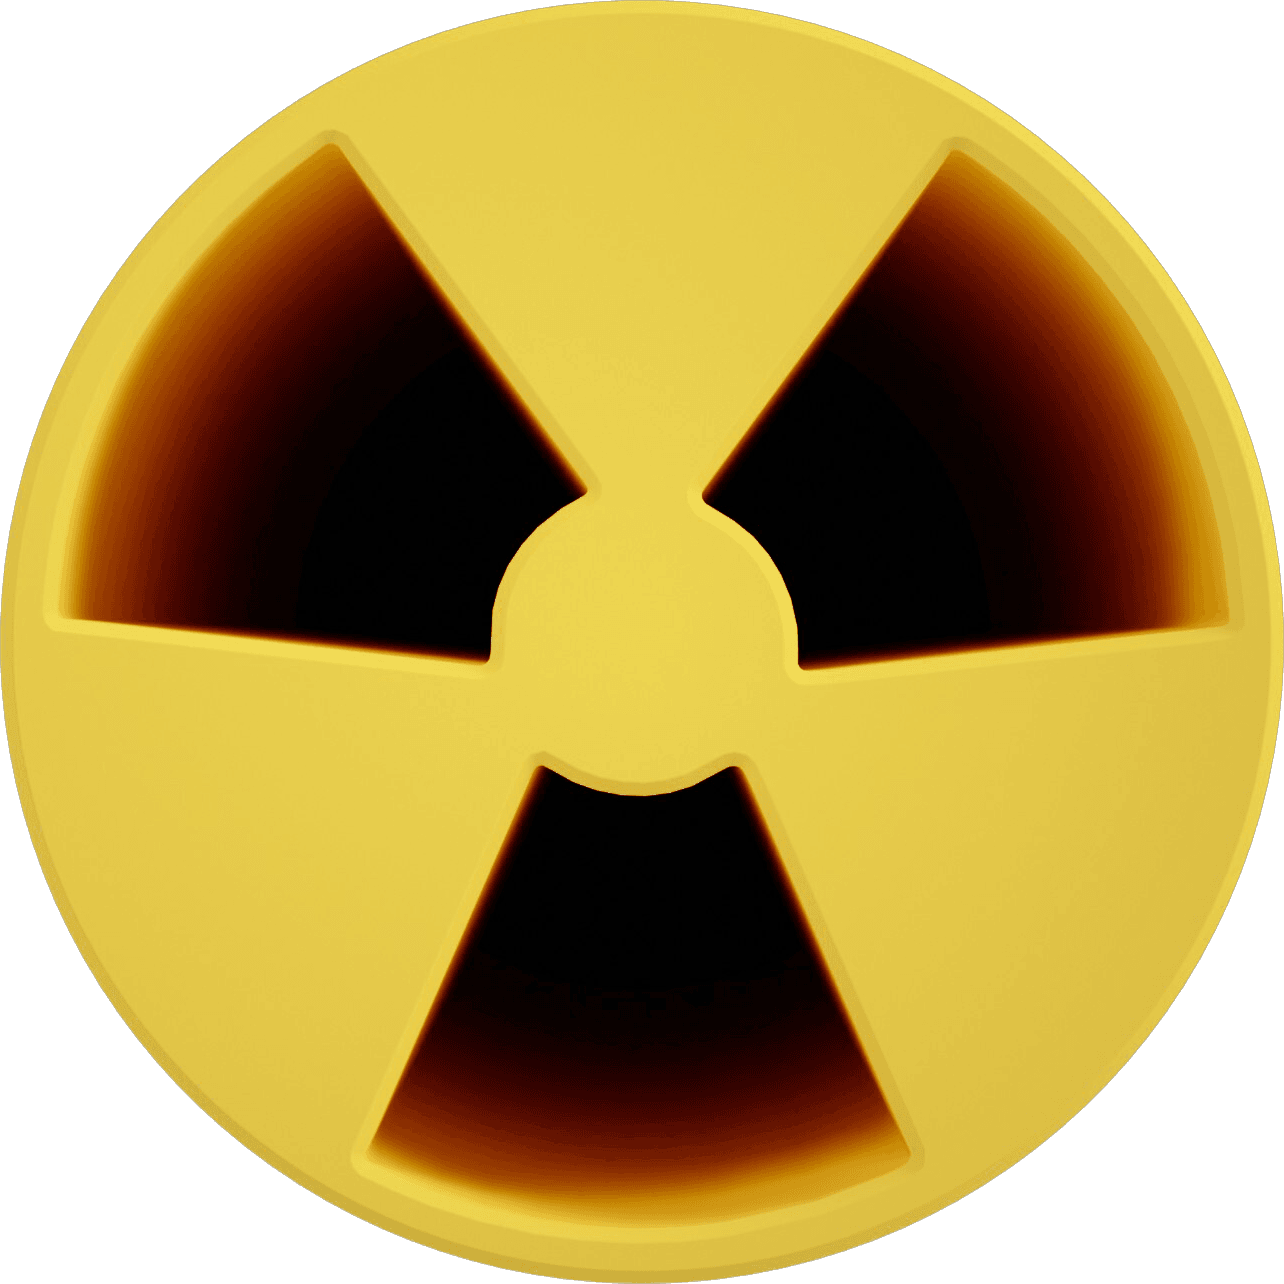 RadioactiveDeployer